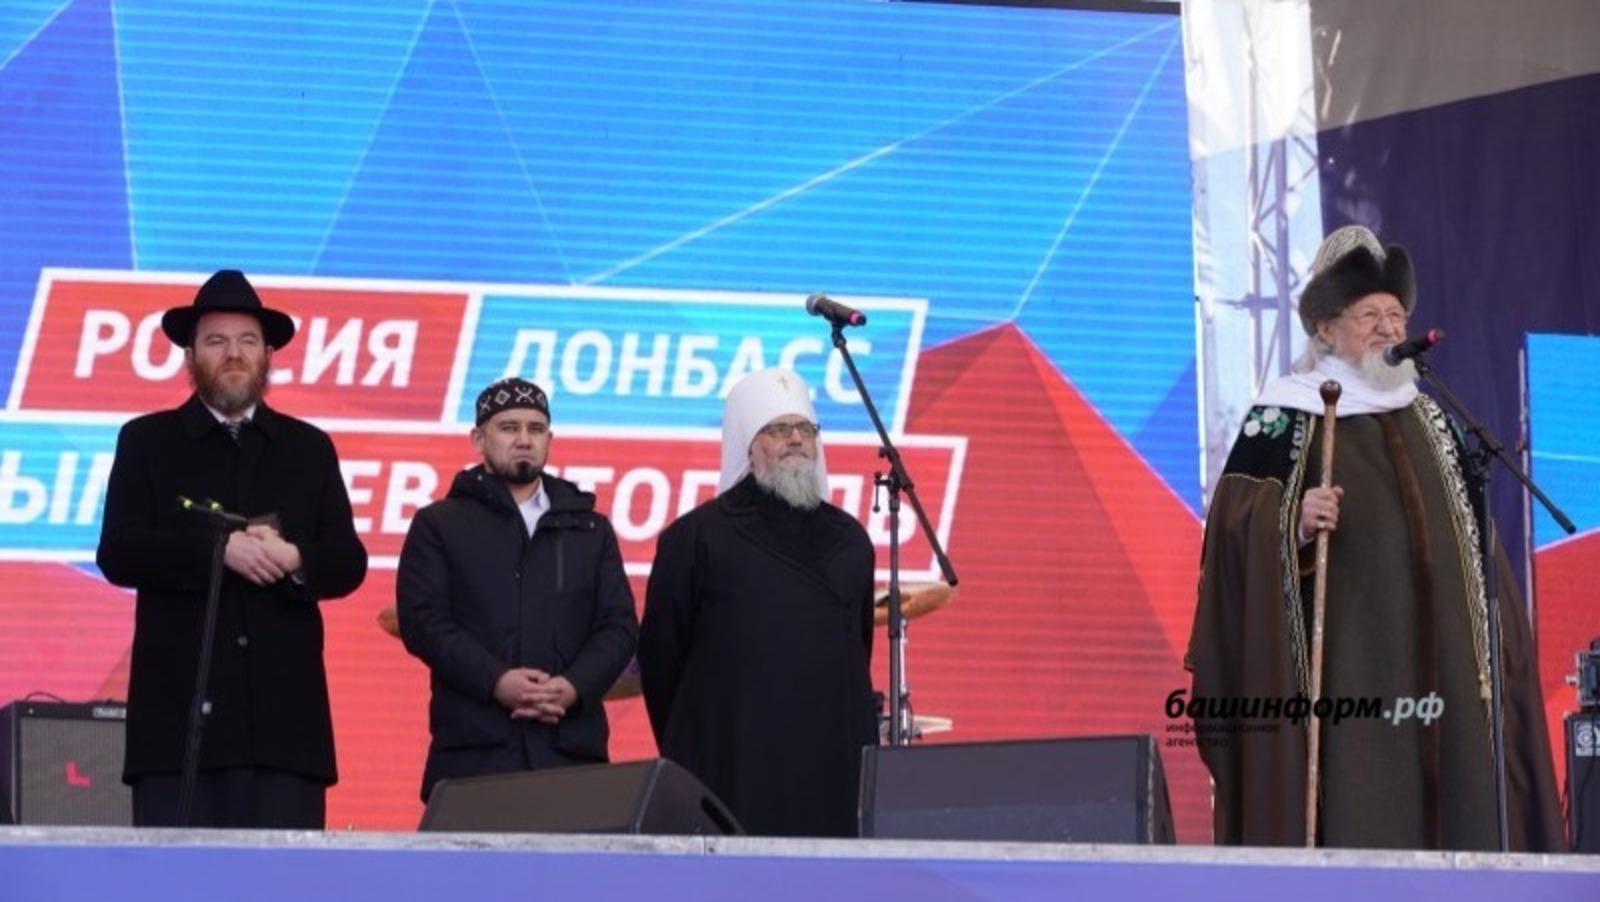 Духовные лидеры Башкирии выступили в поддержку спецоперации на Украине